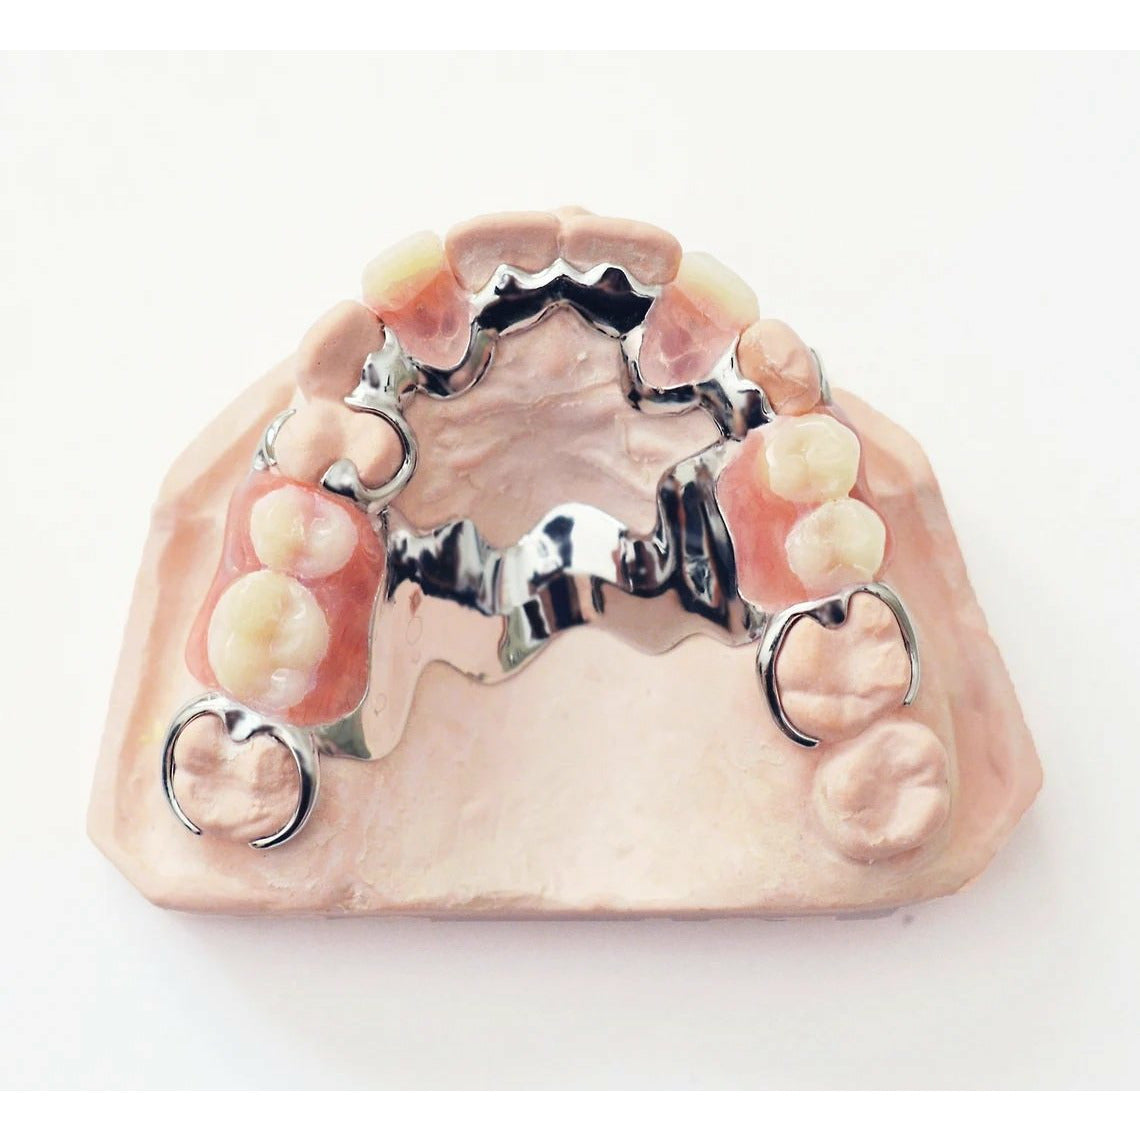 Buy Metal Partial Dentures Online